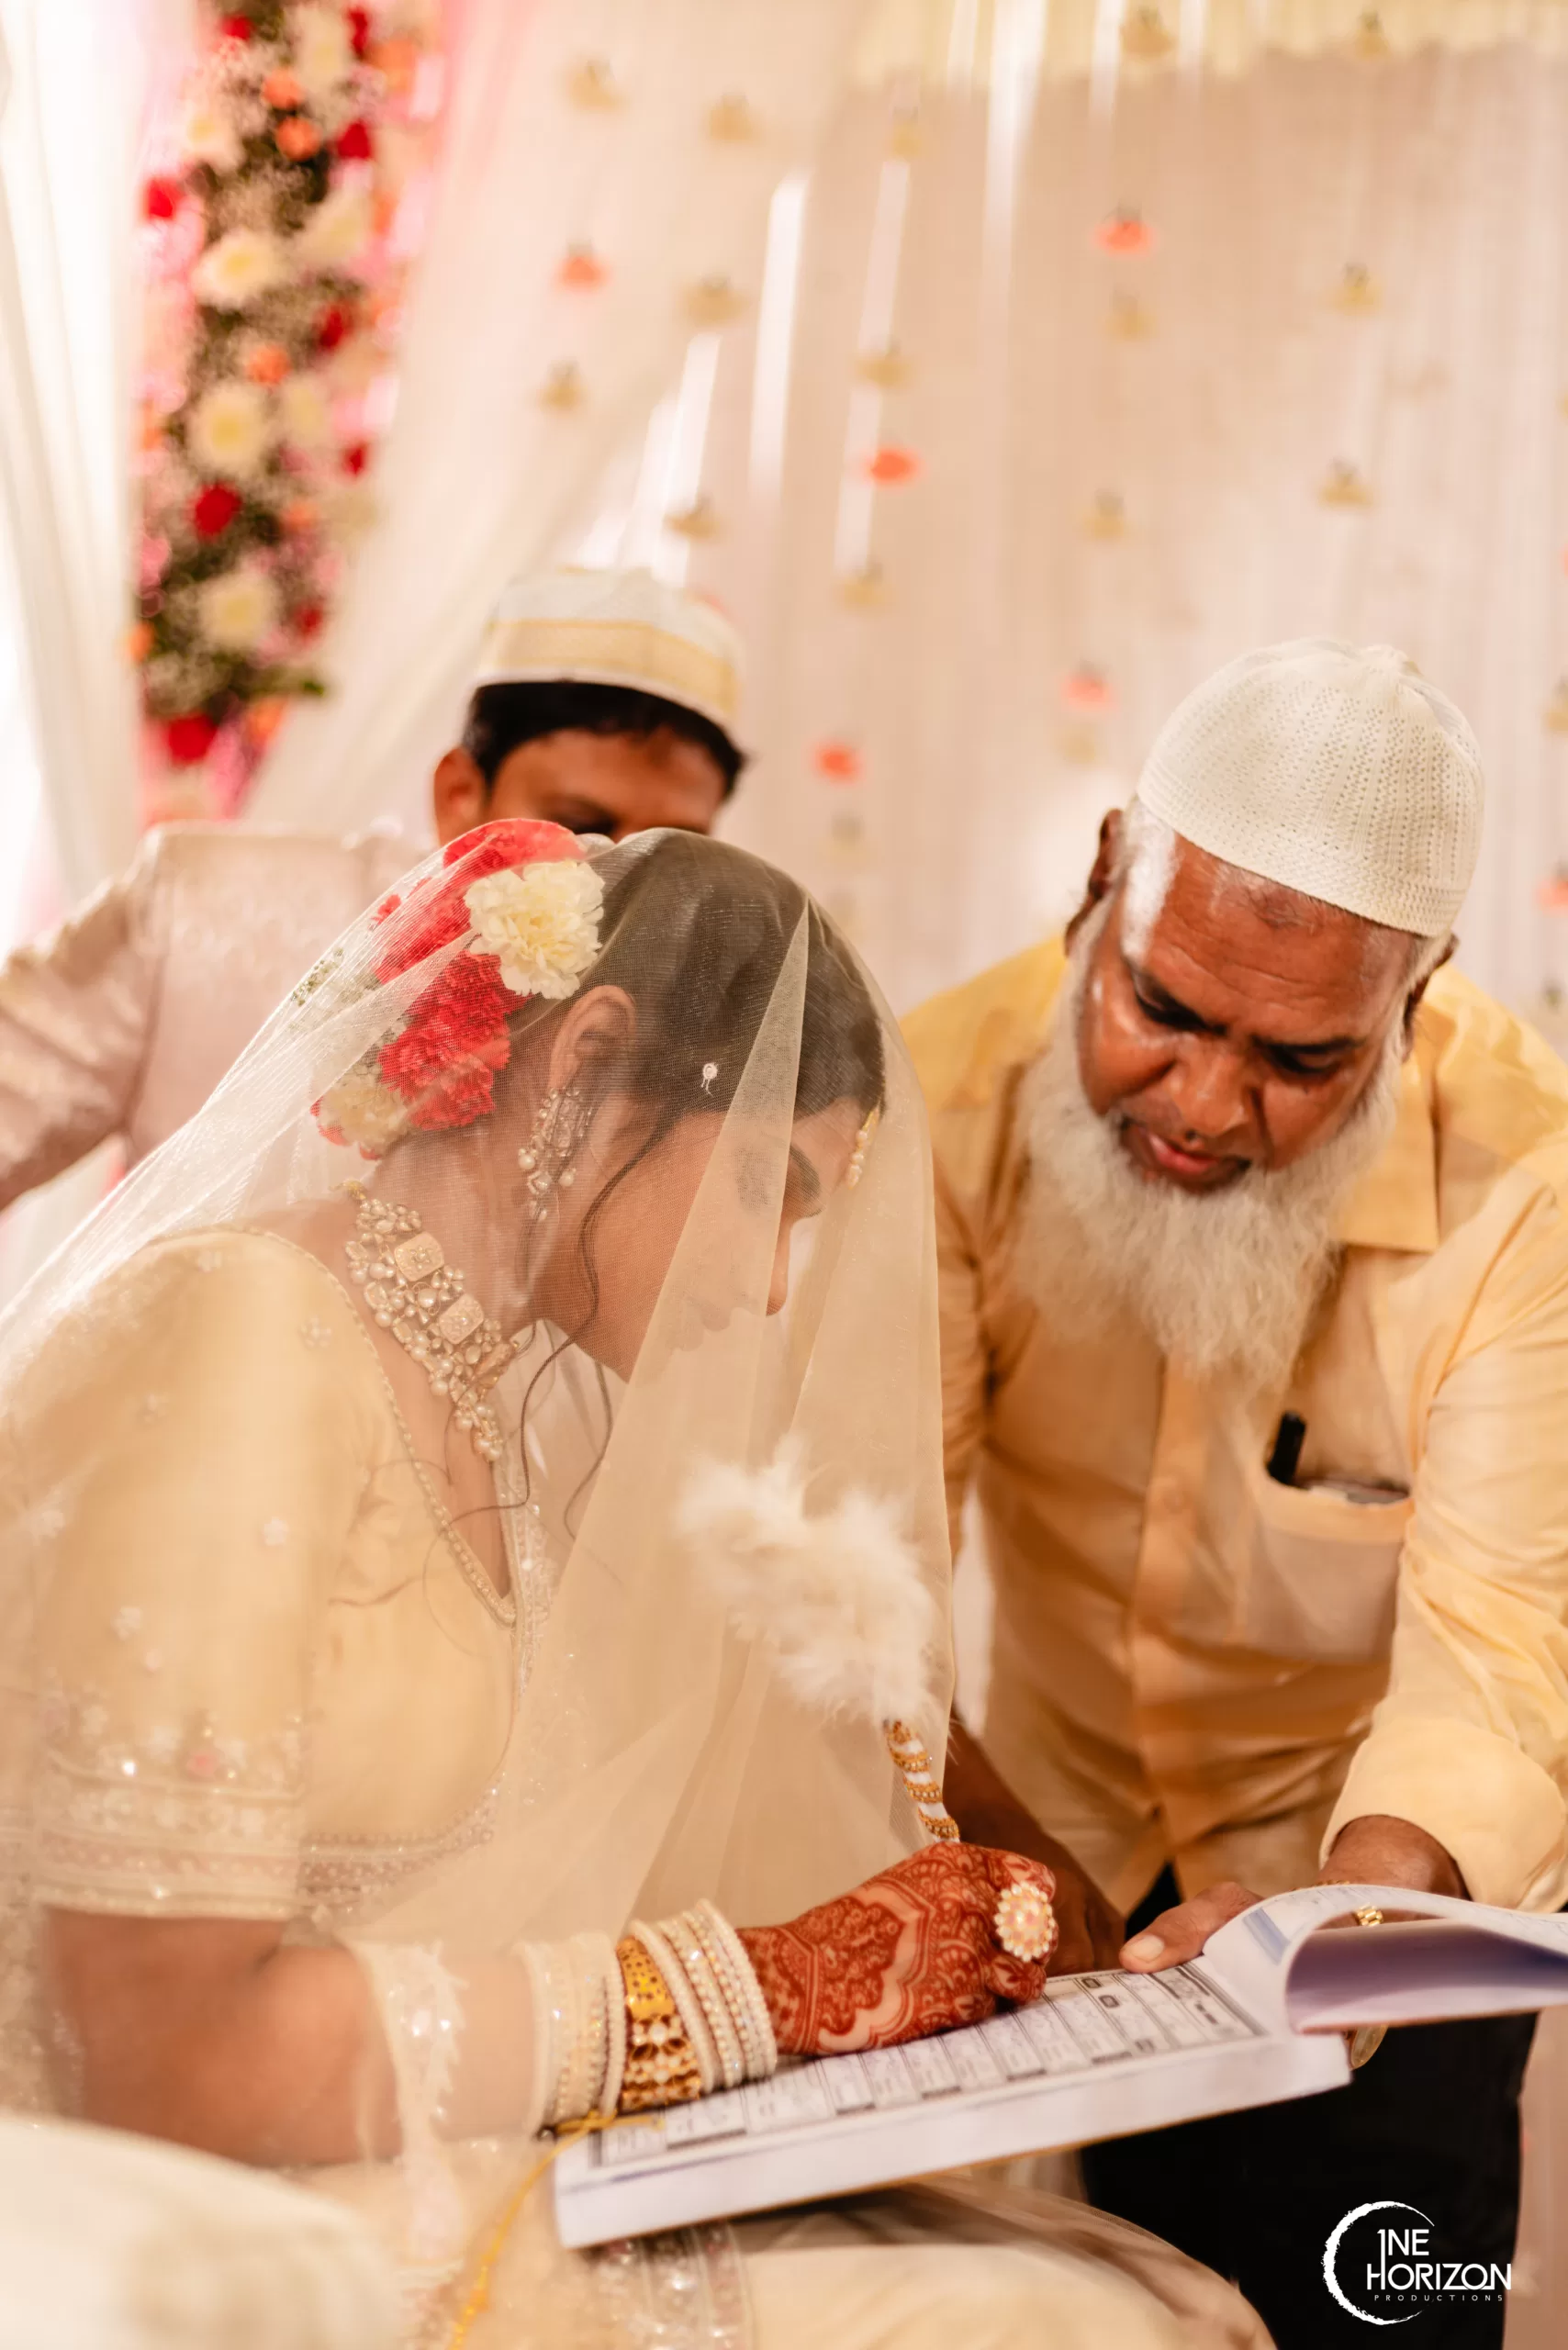 Pakistani Weddings | Couple wedding dress, Wedding photoshoot poses, Pakistani  wedding